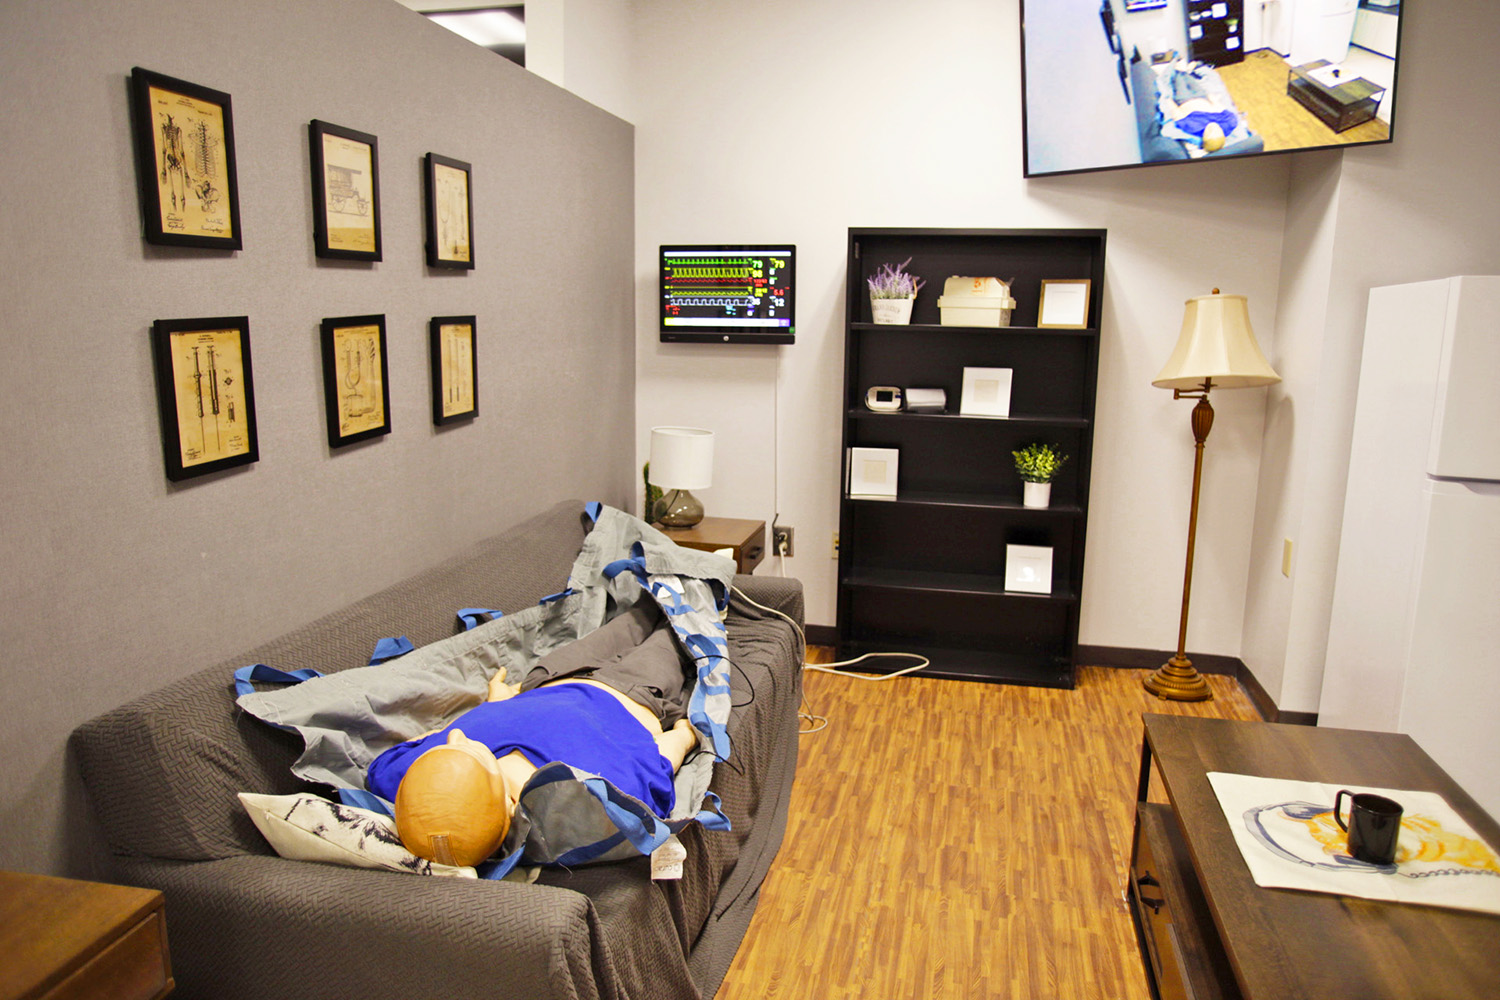 高保真的医用人体模型仰卧在 EMS 仿真模拟空间内客厅的沙发上。教师可从控制间远程控制医用人体模型的症状。学生可通过远处墙面的电脑显示器了解病患的生命体征，室内 PTZ 摄像机采集的画面可被显示在右上方墙面的 55” 平板显示器上